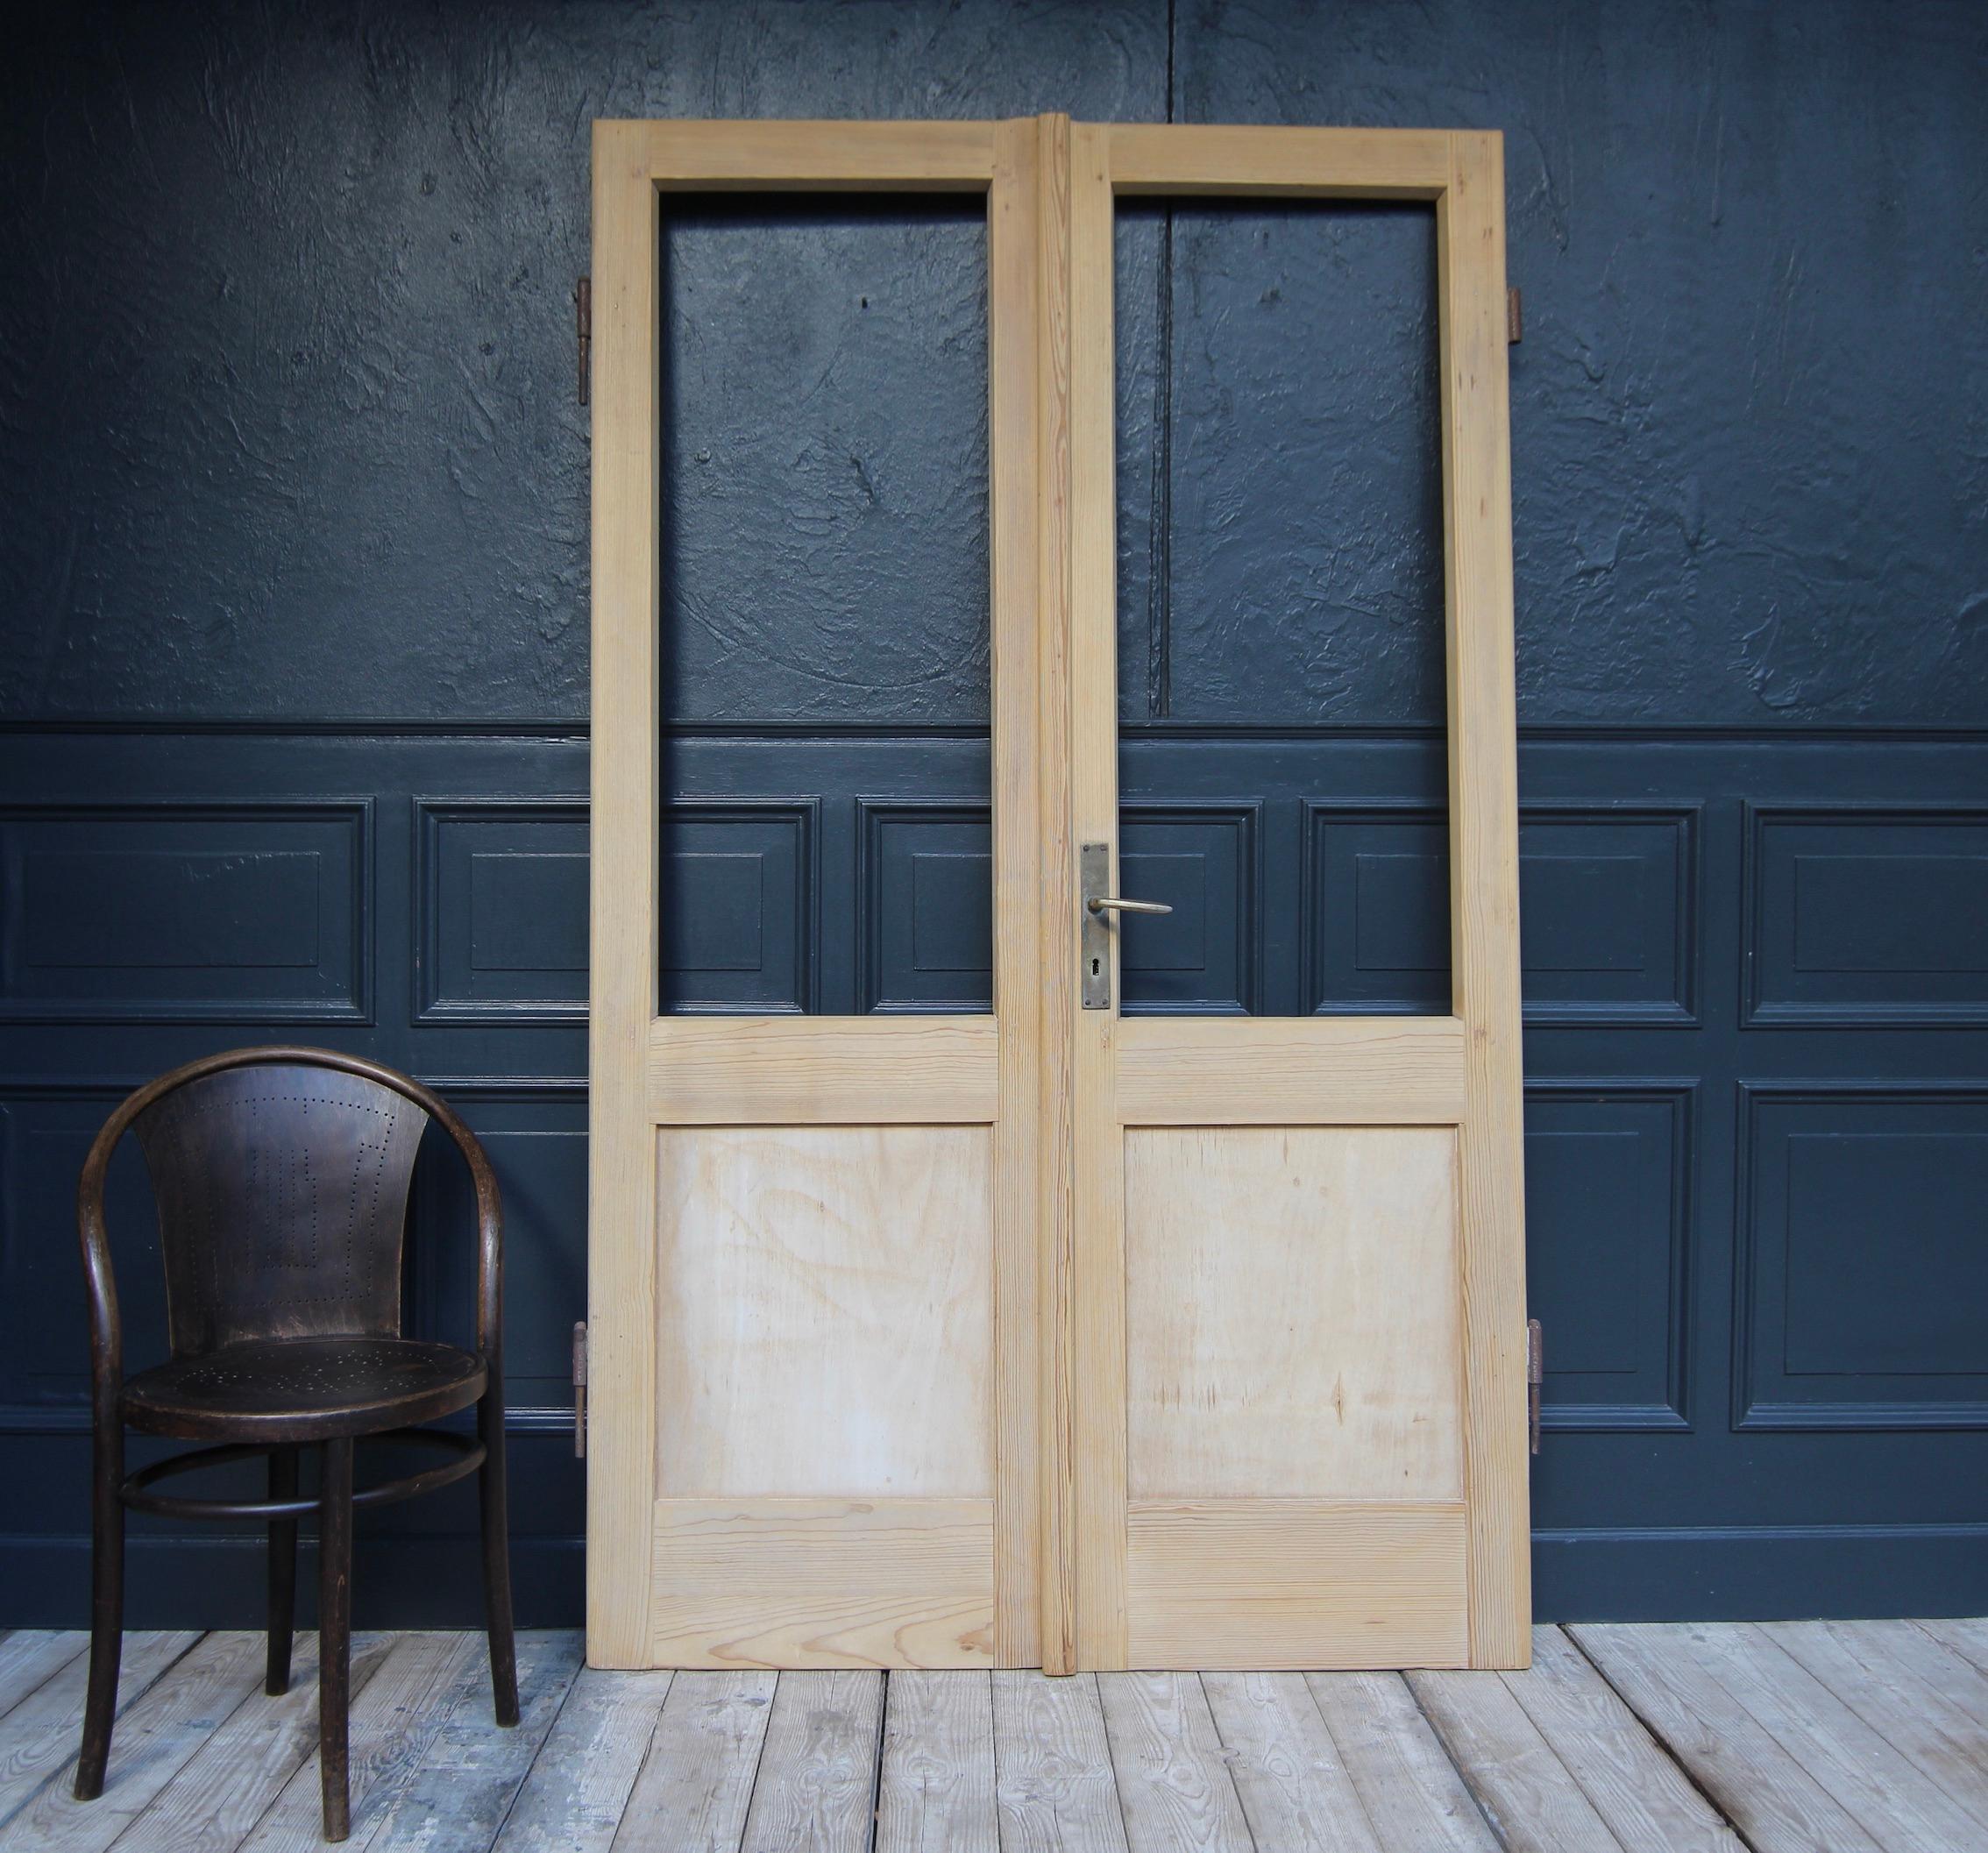 Doppeltür aus Kiefernholz aus der Schweiz. Anfang des 20. Jahrhunderts. Unrestauriert.

Bestehend aus zwei ursprünglich halbverglasten Türen in Rahmen- und Paneelkonstruktion (Sperrholzplatten) mit großen Außenbeschlägen.
Ohne